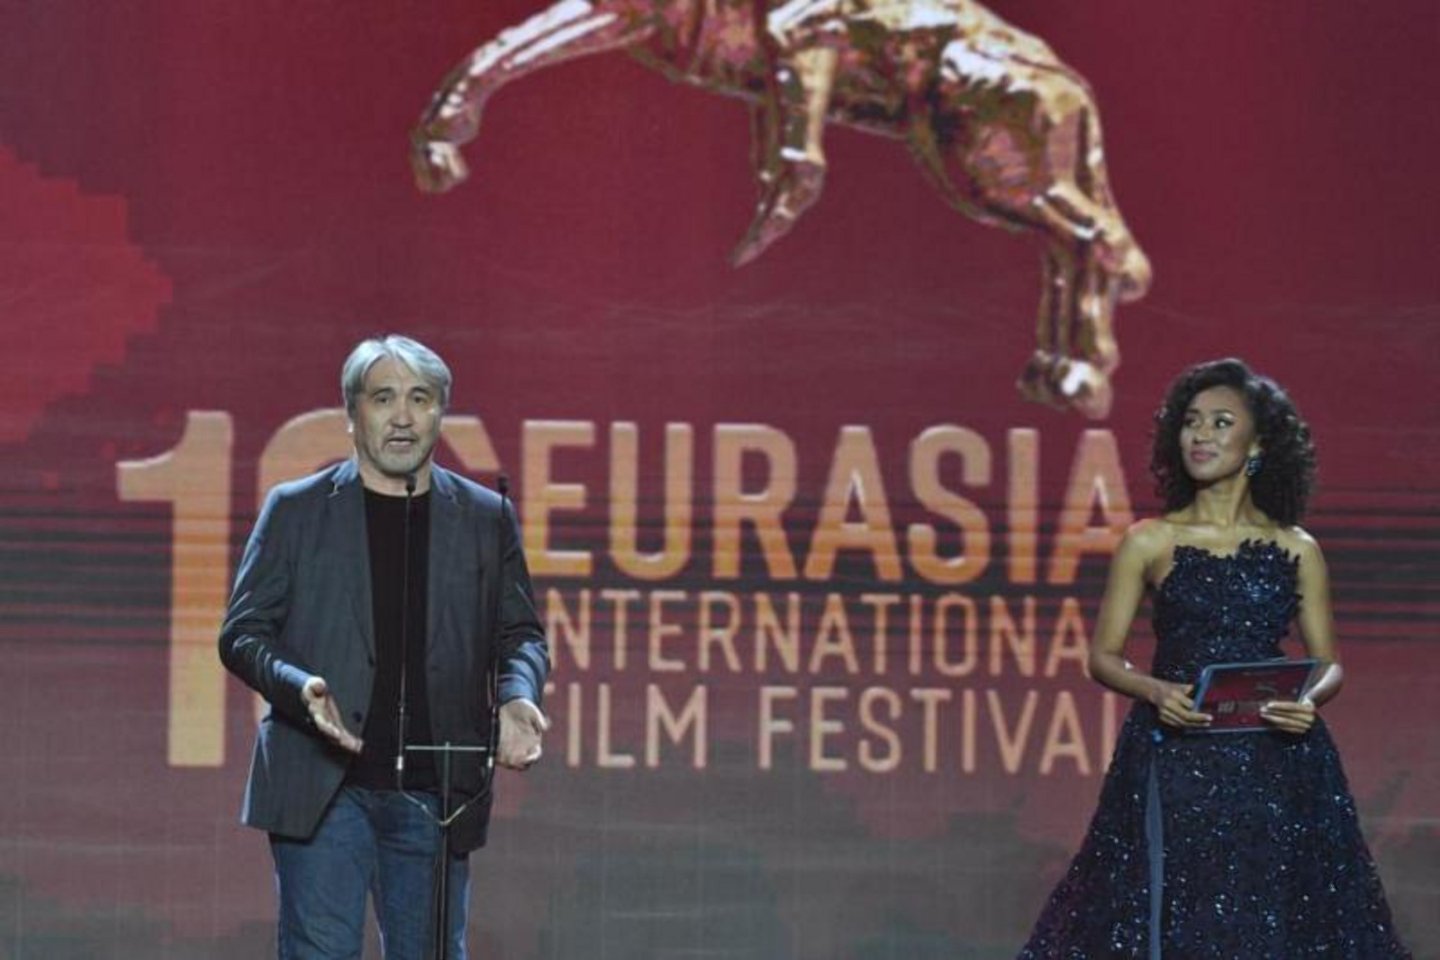 Новости Казахстана / Общество в Казахстане / XVI кинофестиваль "Евразия", ставший международным, стартовал в Алматы